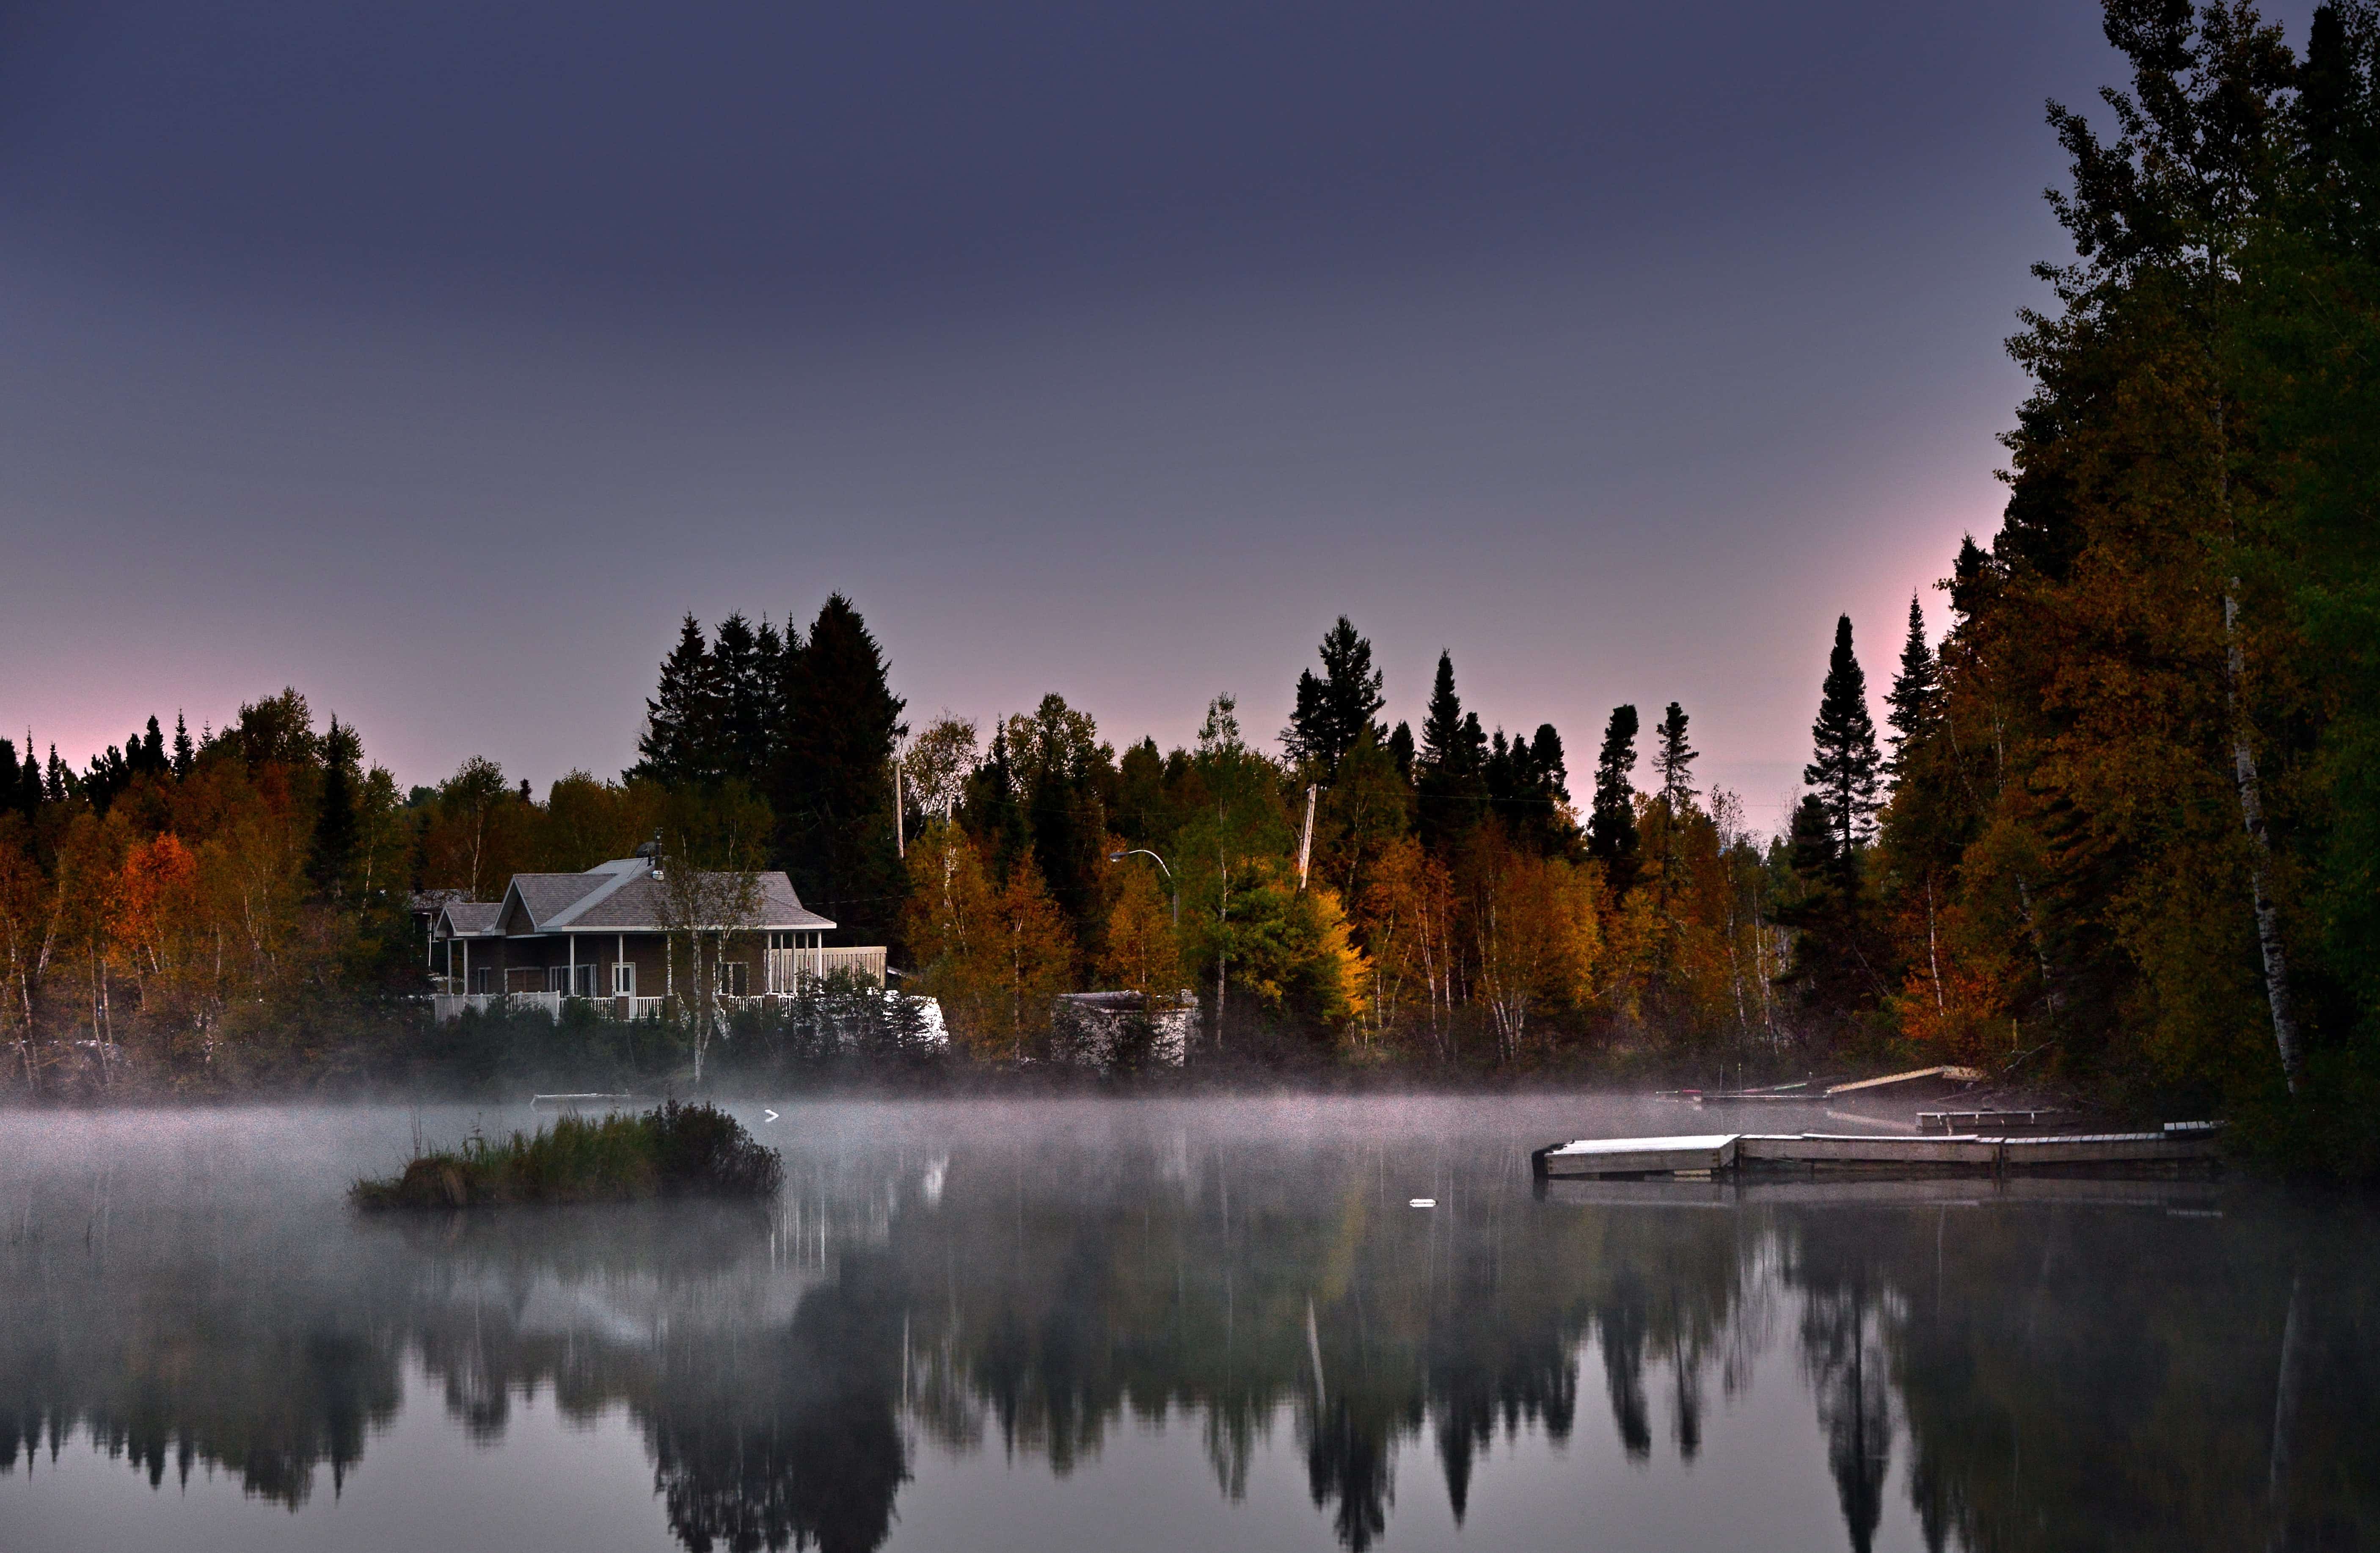 Фильму берегу озера. Дом Канада Онтарио у озера. Лес Квебек Канада. Озеро Онтарио Канада , осень. Канада провинция Онтарио природа.